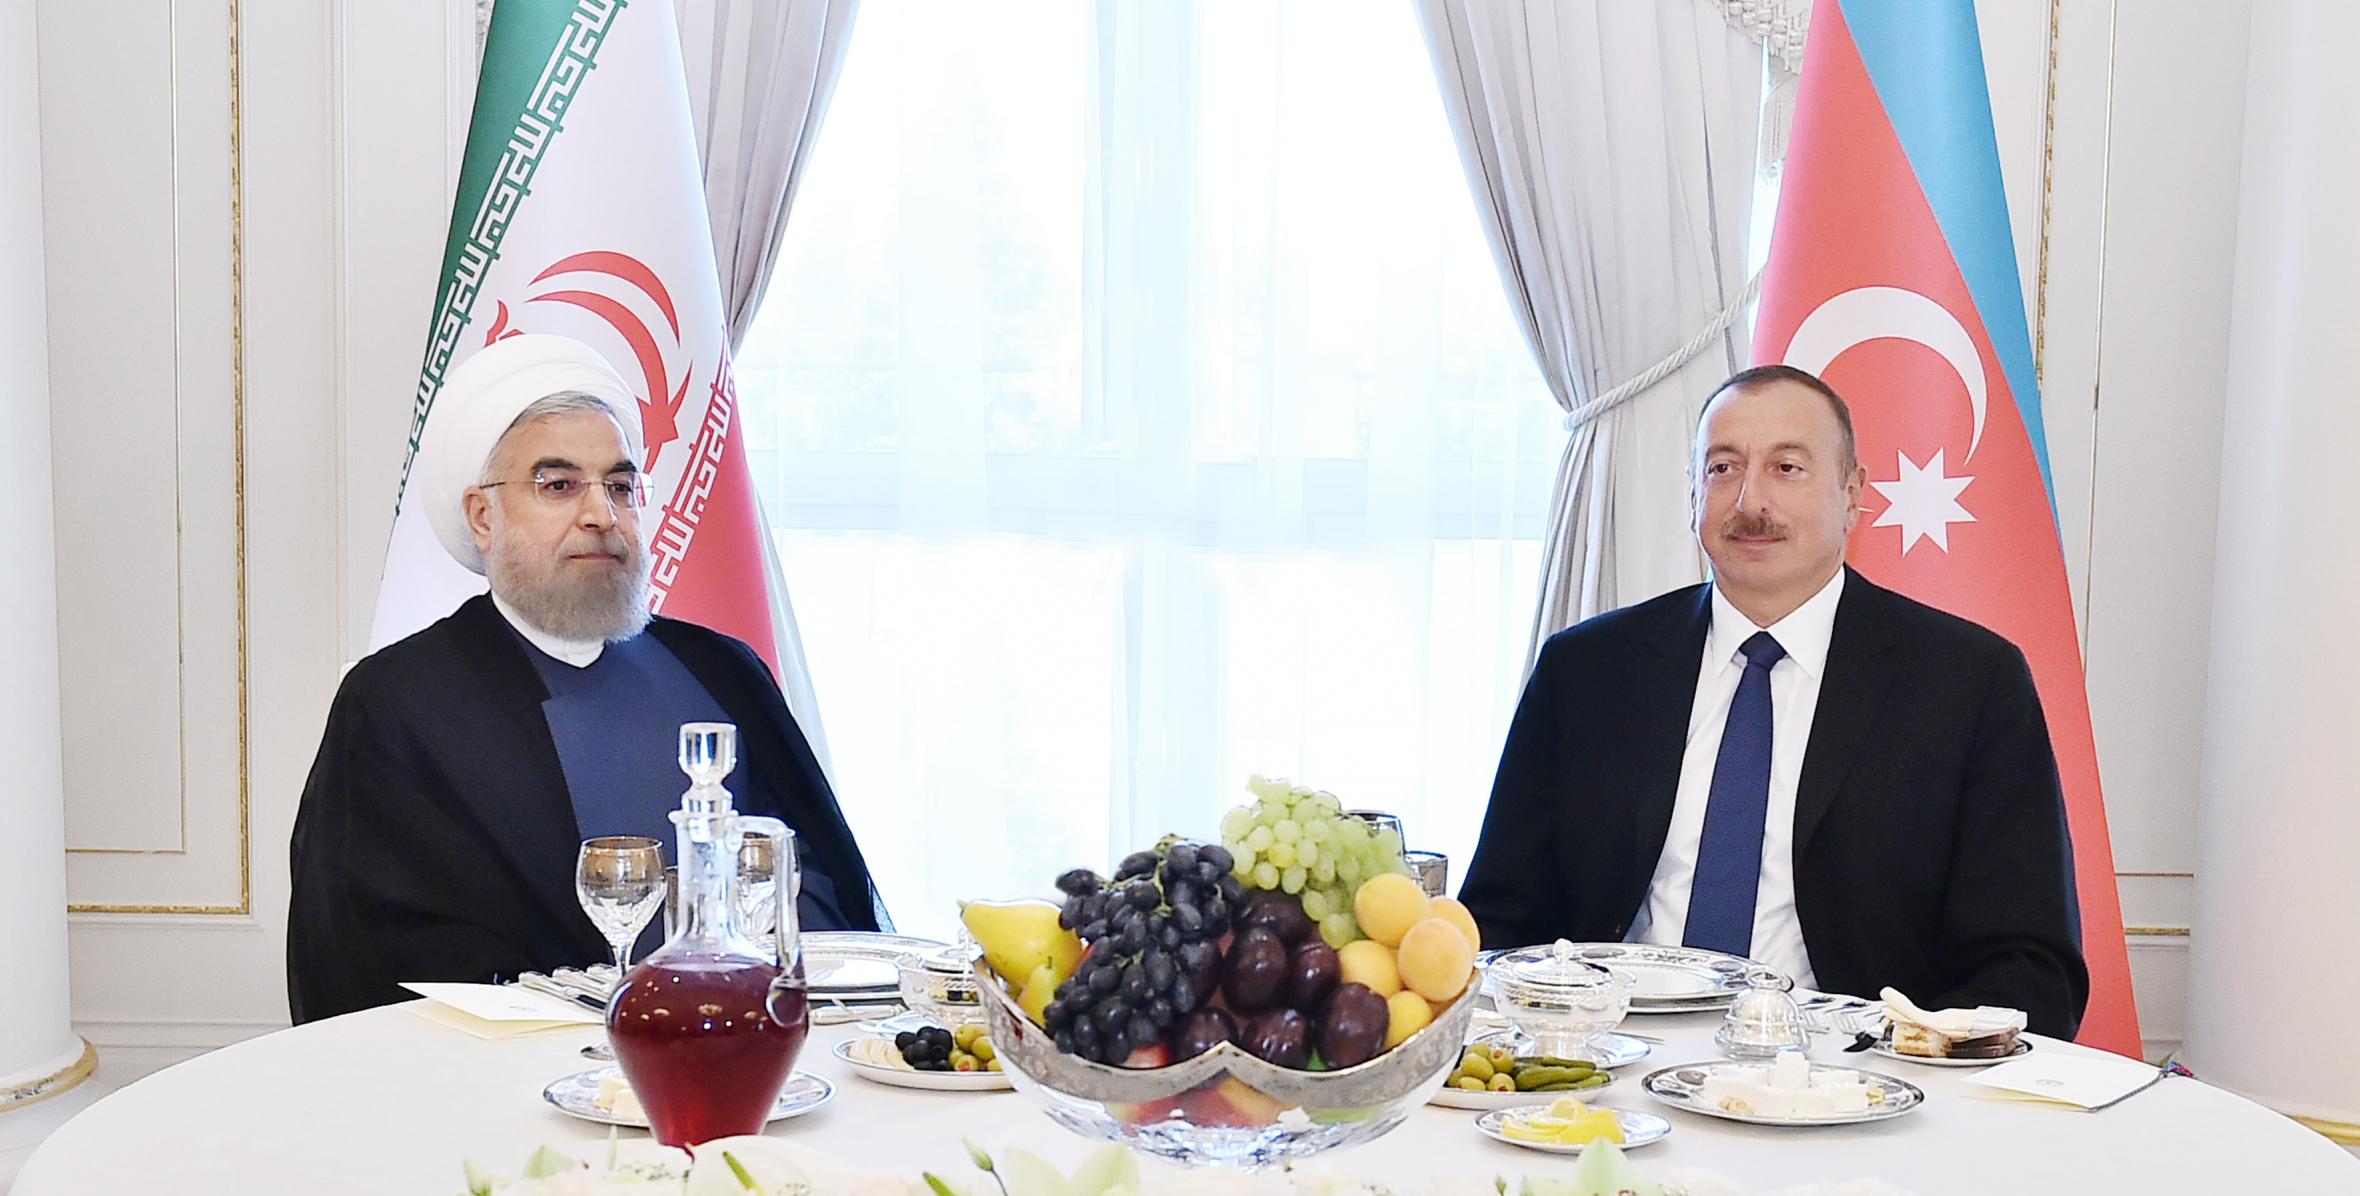 От имени Ильхама Алиева был устроен прием в честь Президента Исламской Республики Иран Хасана Роухани